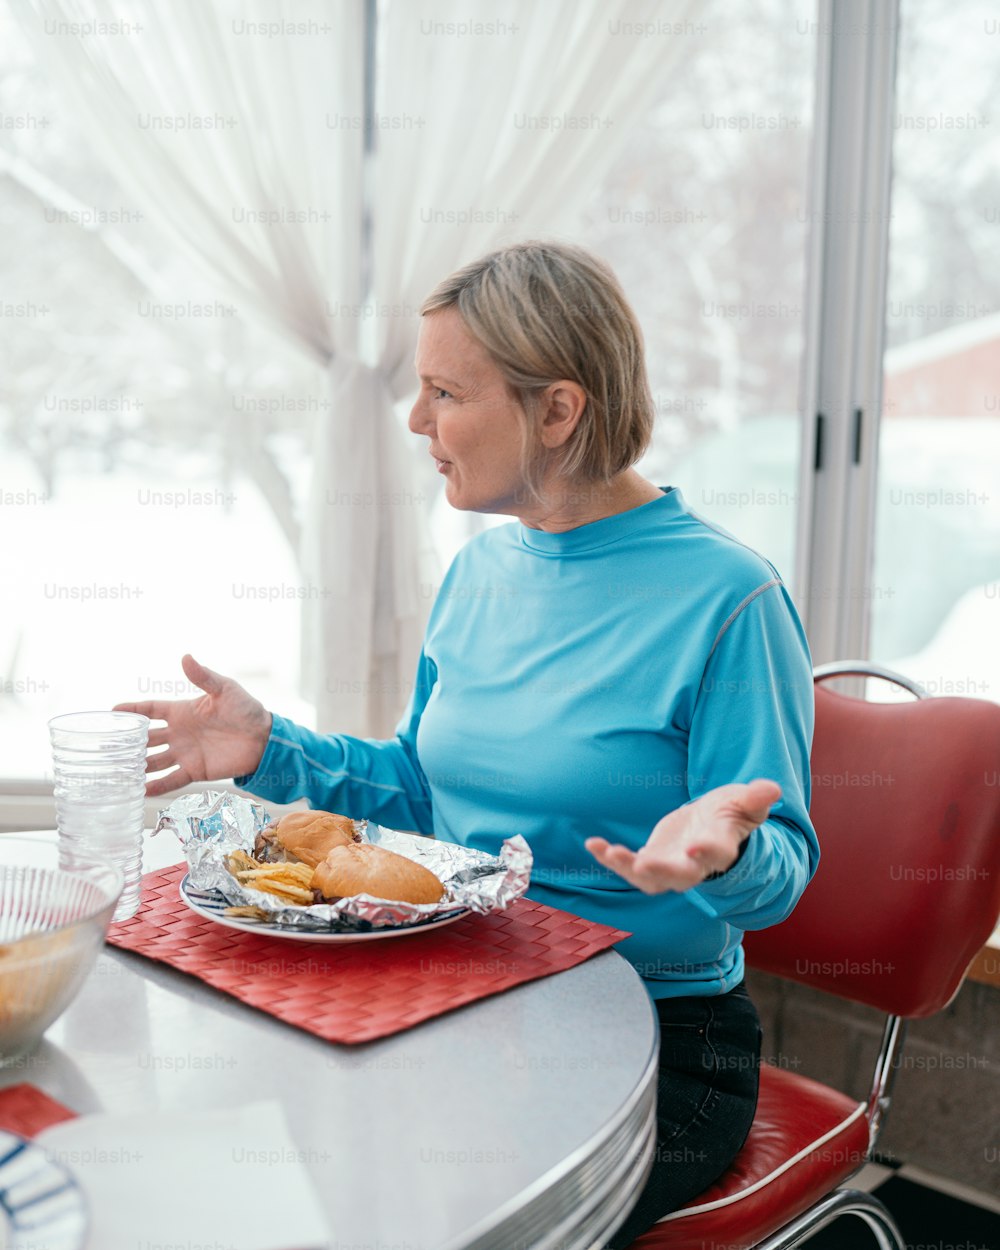 食べ物の皿を持ってテーブルに座ってい�る女性